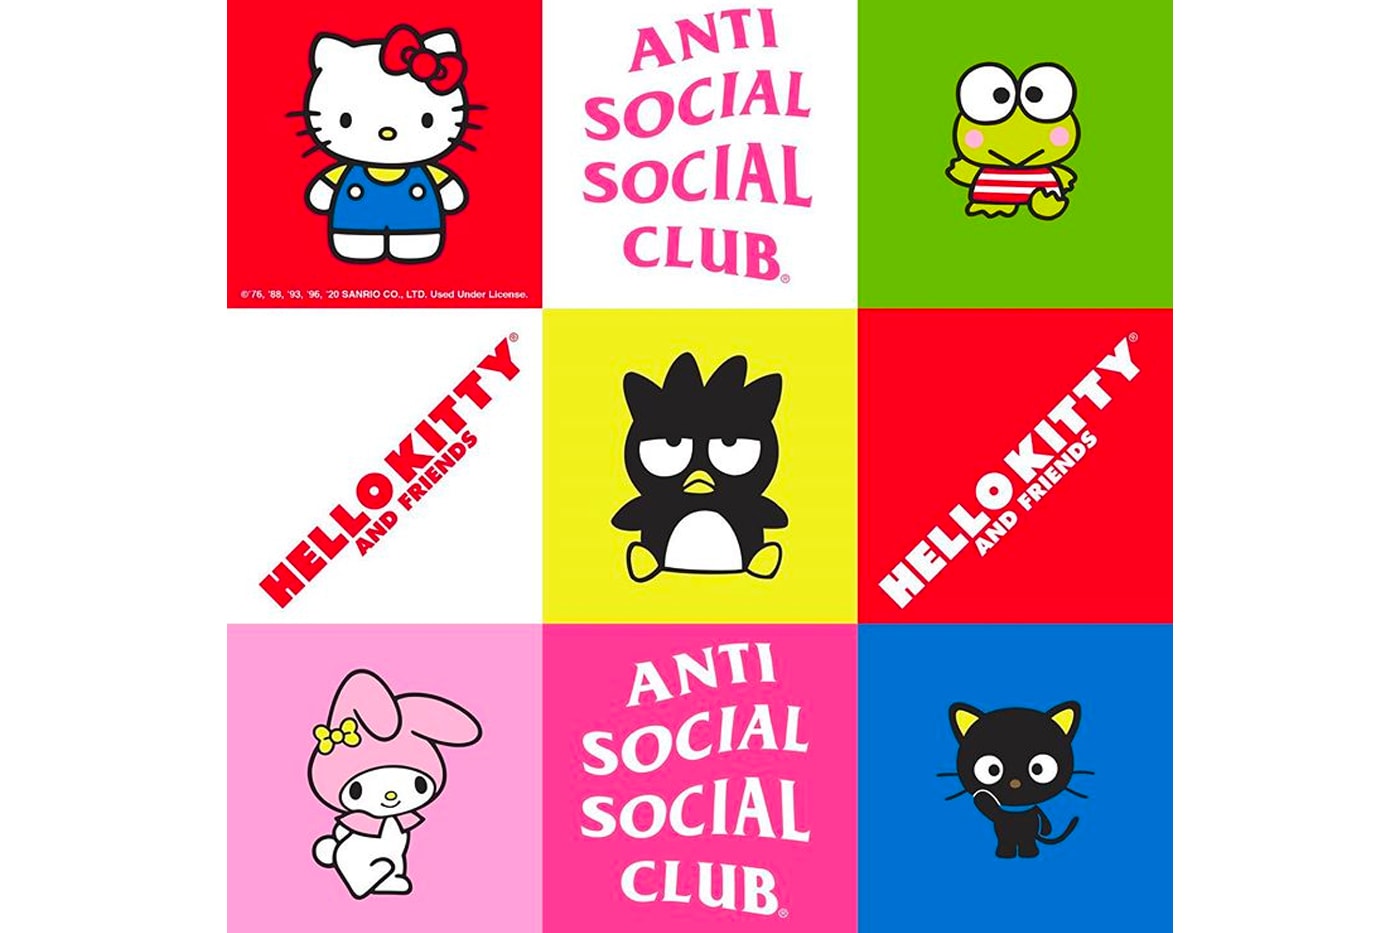 アンチ・ソーシャル・ソーシャル・クラブがサンリオとのコラボをアナウンス Anti Social Social Club Teases Upcoming Sanrio Collaboration